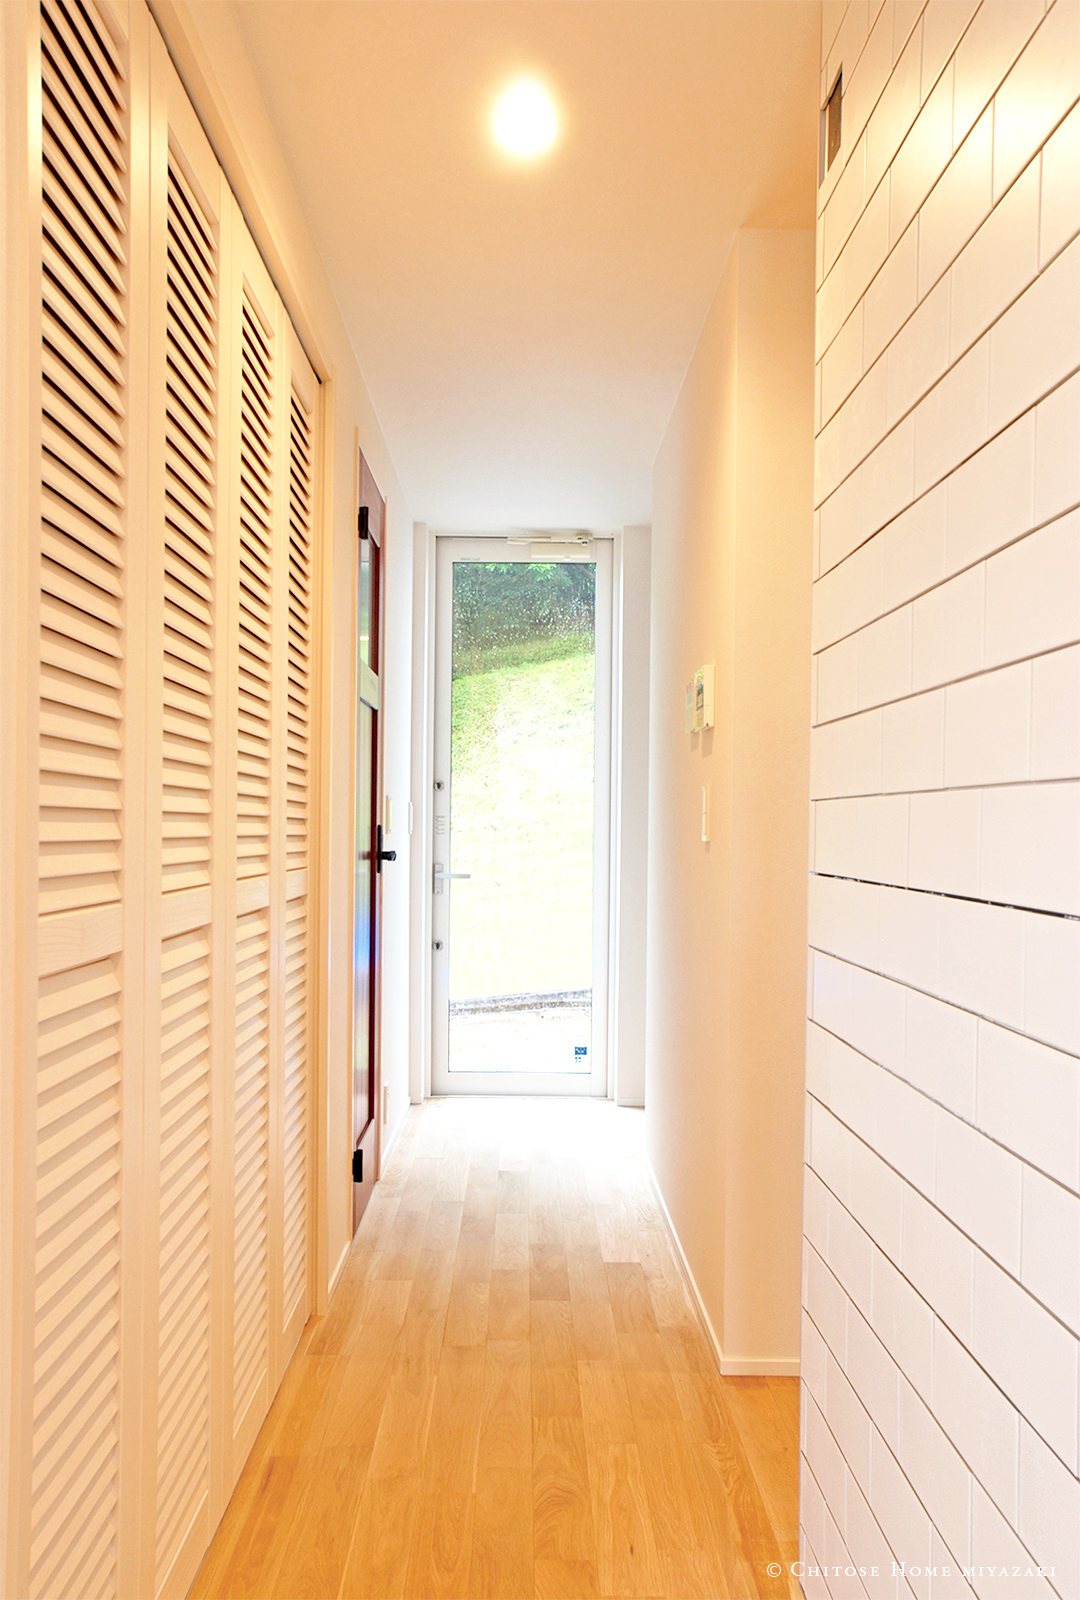 玄関正面の壁を、大開口の勝手口ドアで構成。廊下に間接光を採り込み、風通しも確保。また、木目ルーバータイプの収納扉を採用し、西海岸のビーチテイストを演出。